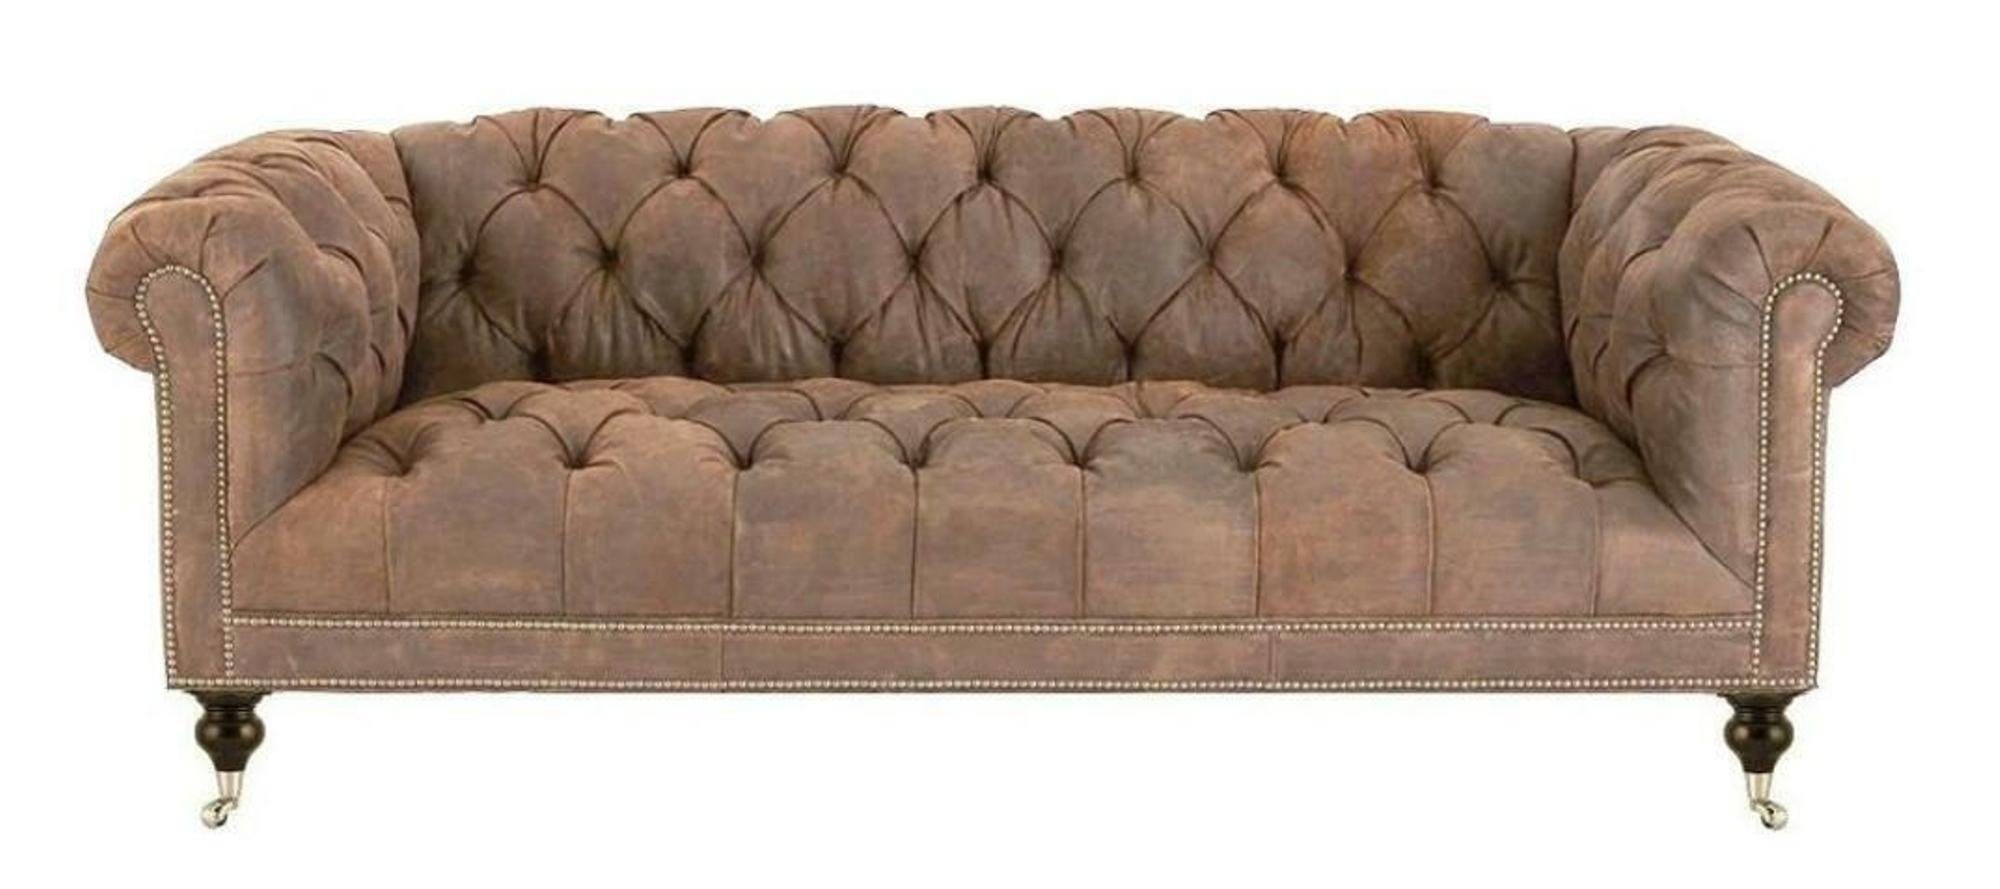 JVmoebel Chesterfield-Sofa, Braun Dreisitzer Chesterfield Modern Design Leder Sofa Design Möbel Beige